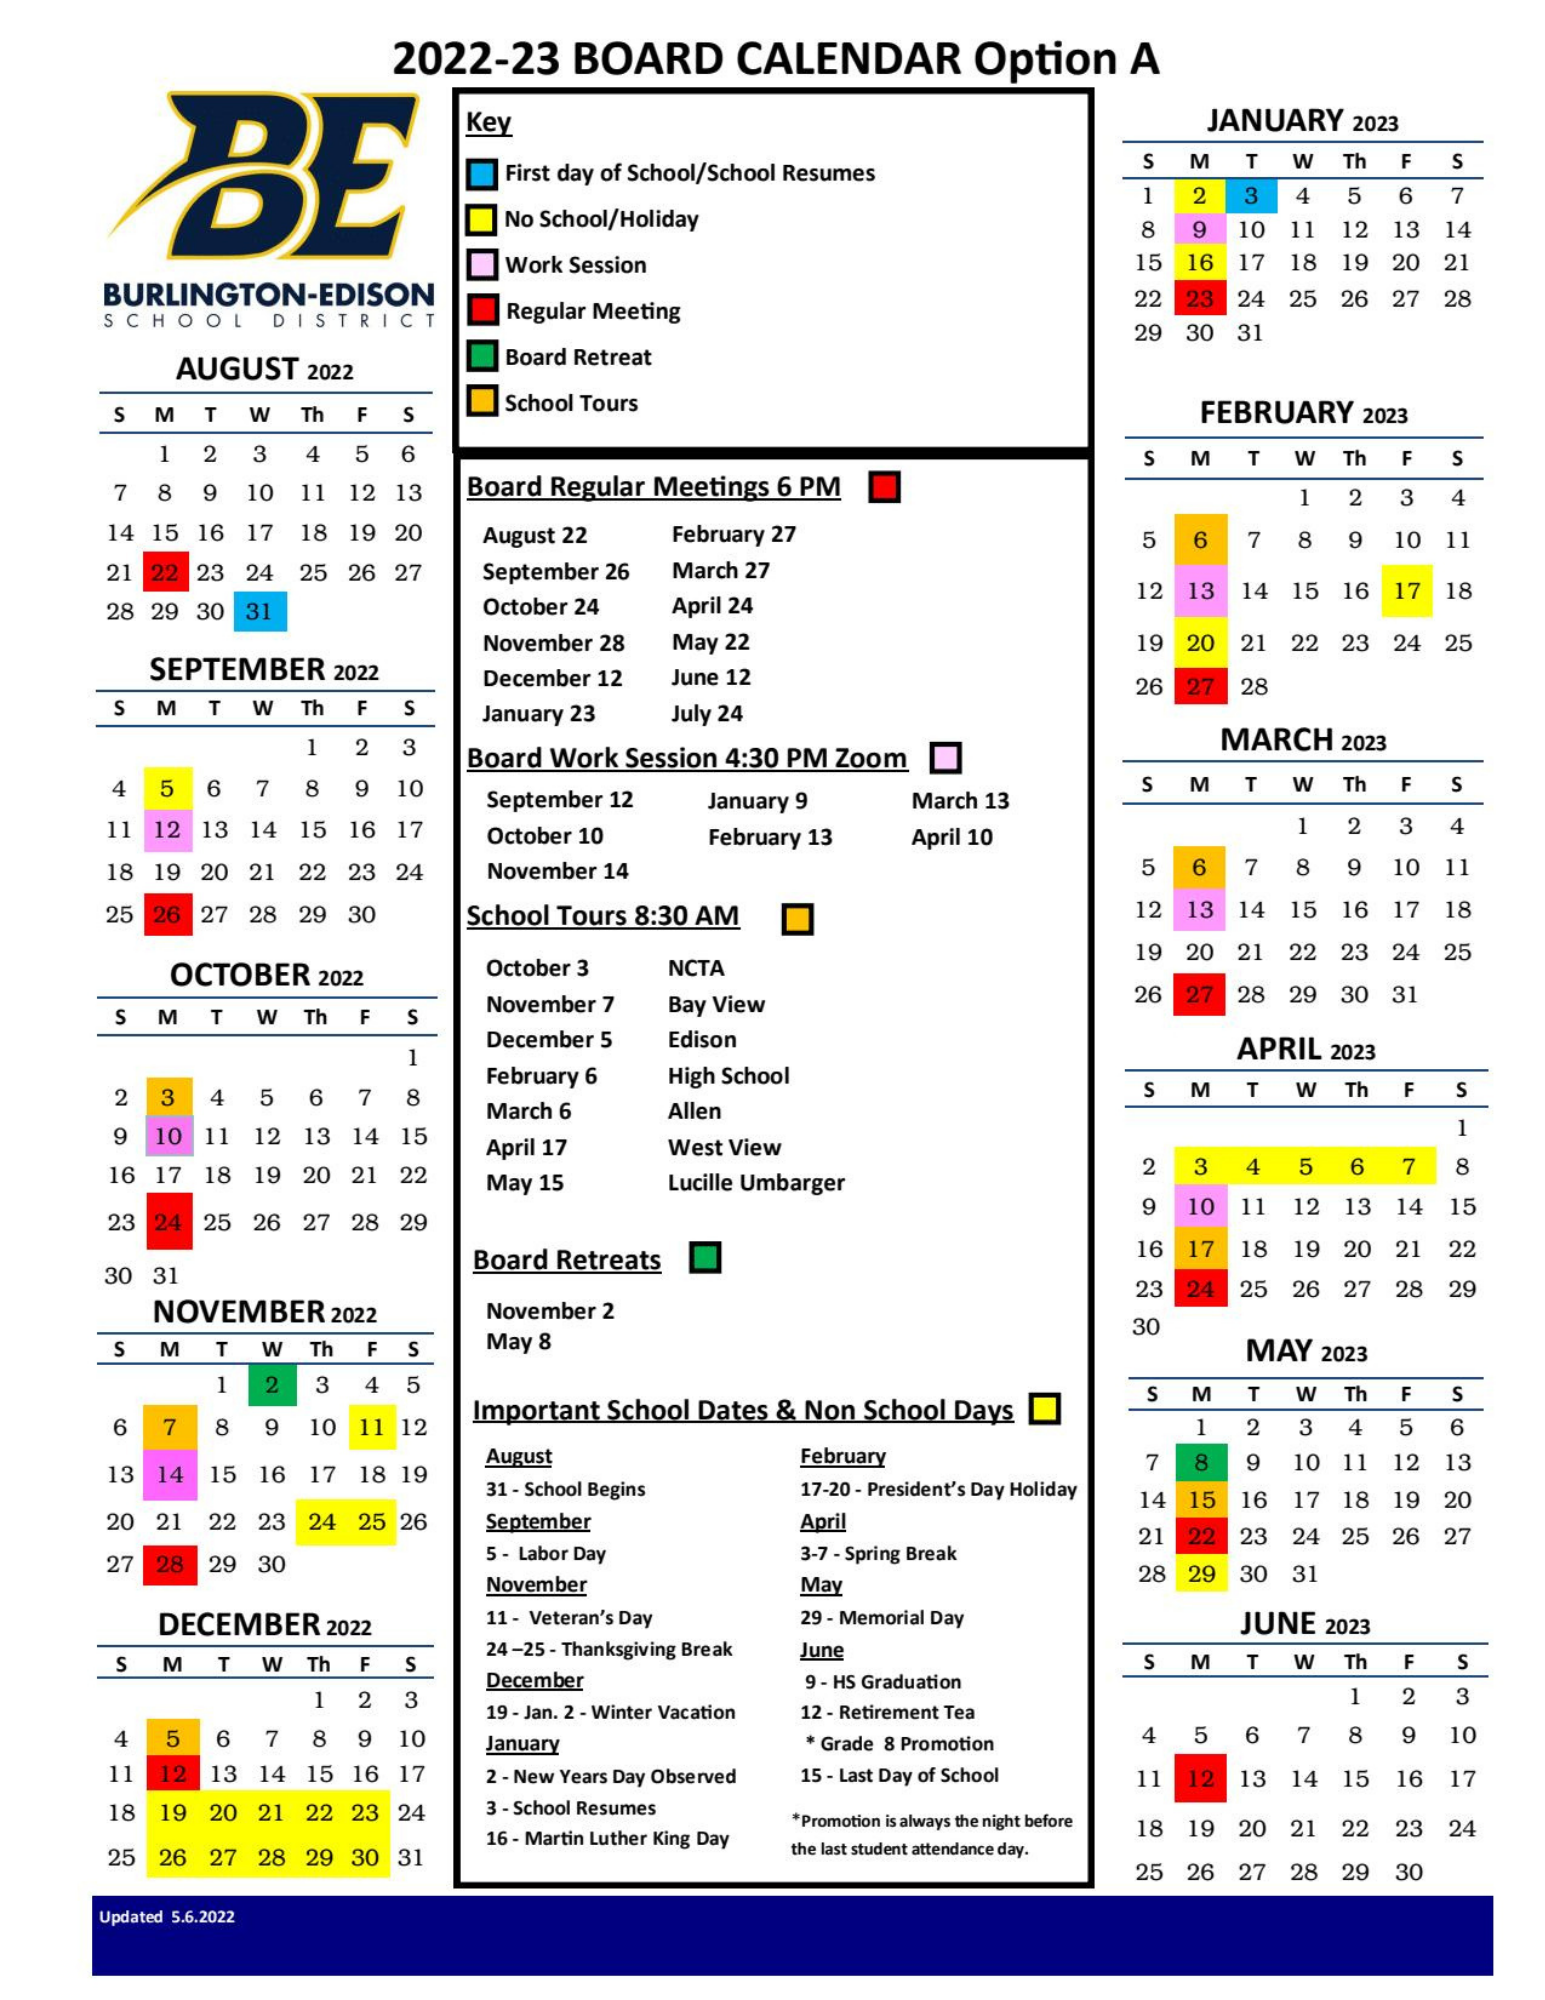 Board Calendar BurlingtonEdison School District